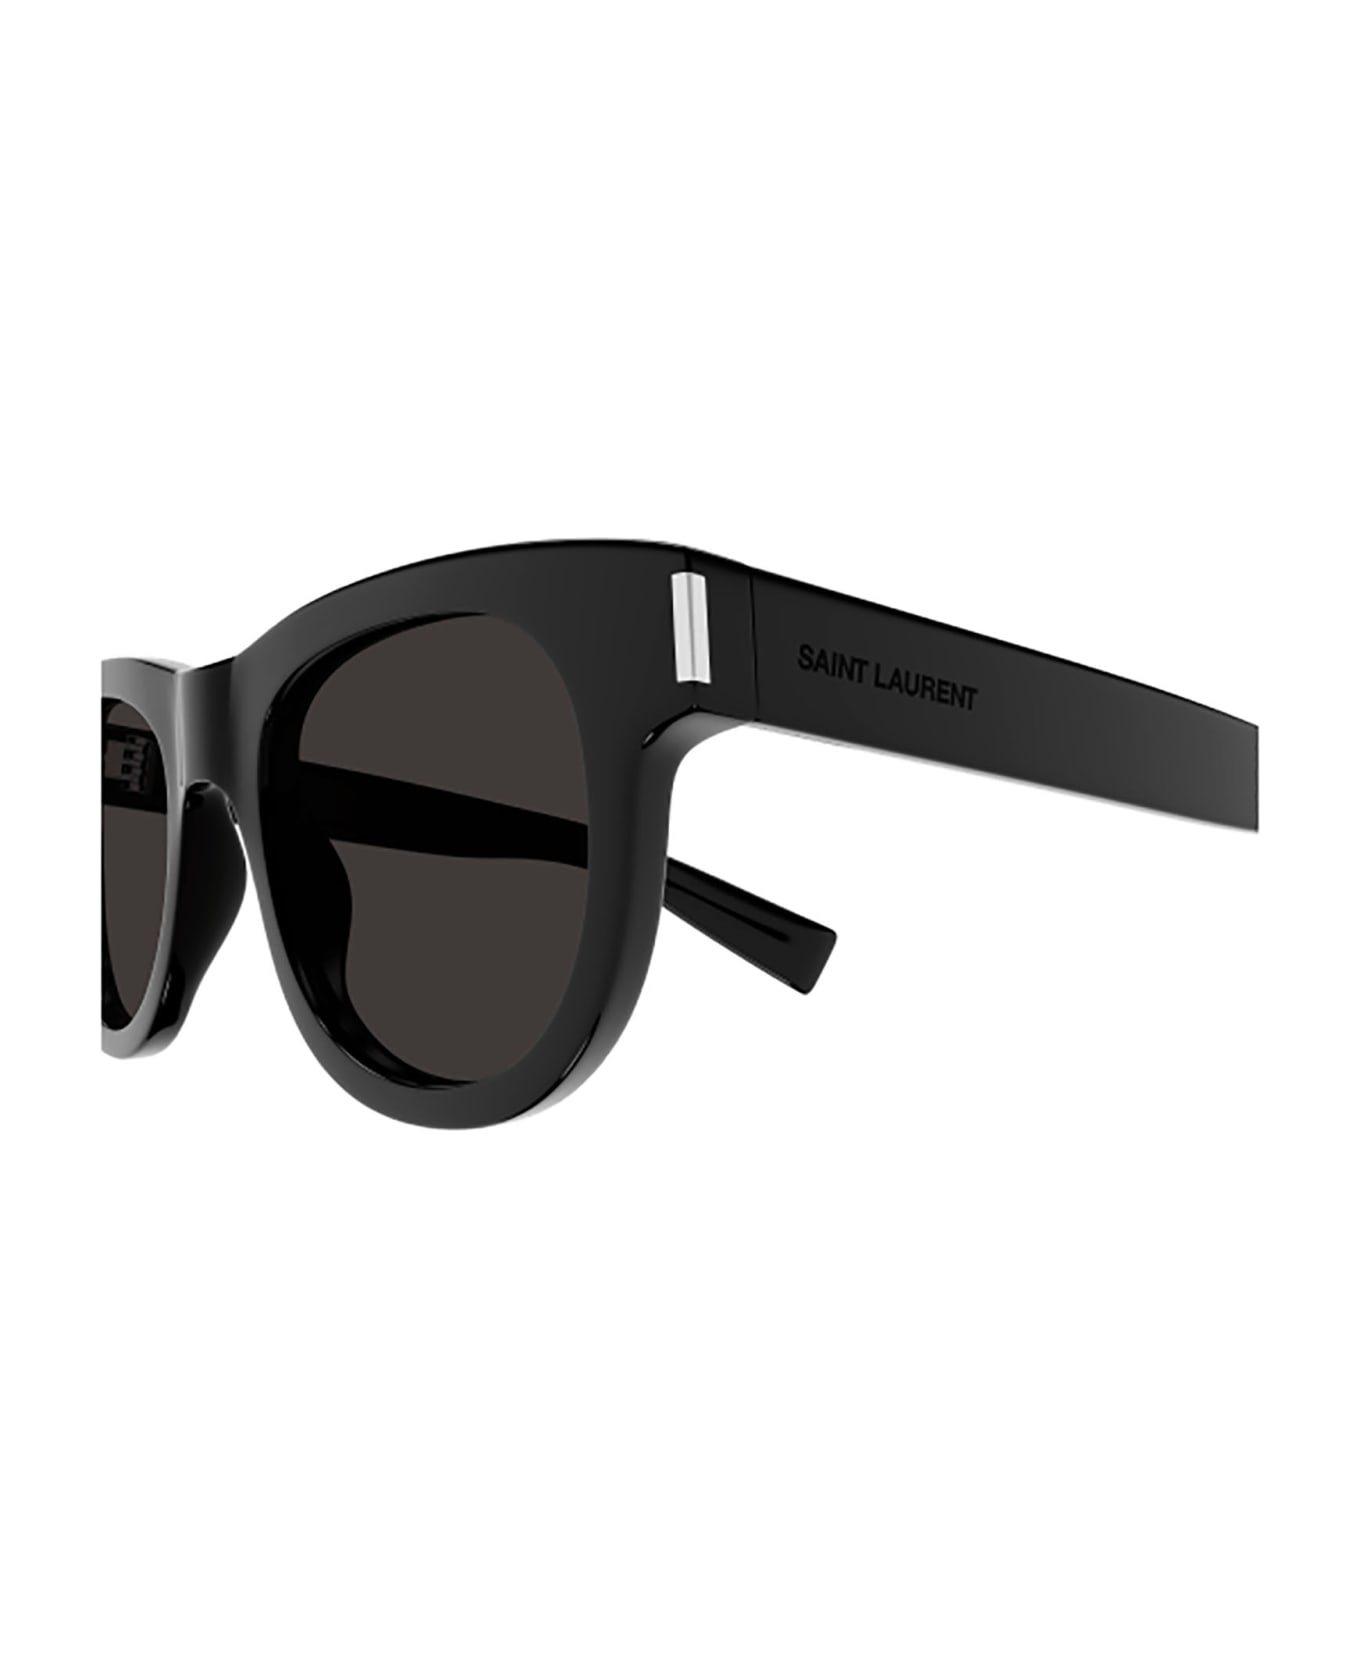 Saint Laurent Eyewear SL 571 Sunglasses - Black Black Black